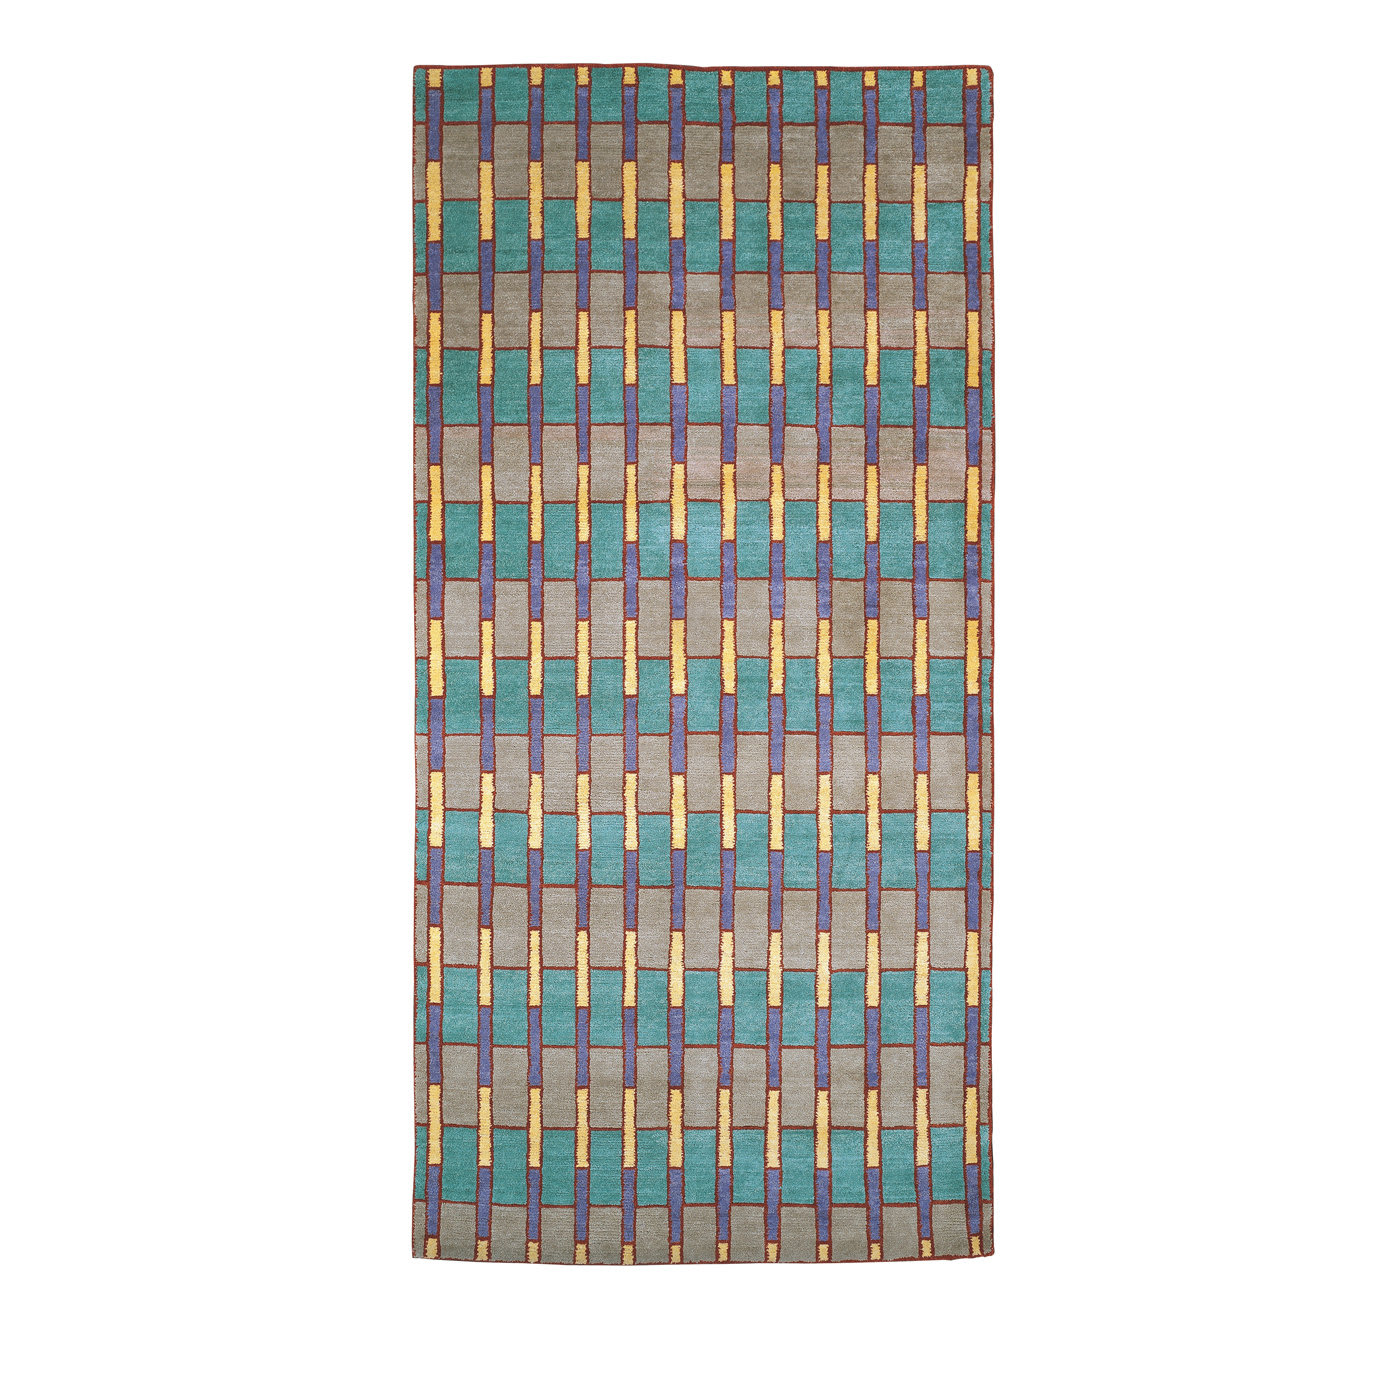 GJS7 Carpet by George J. Sowden - Post Design - Memphis